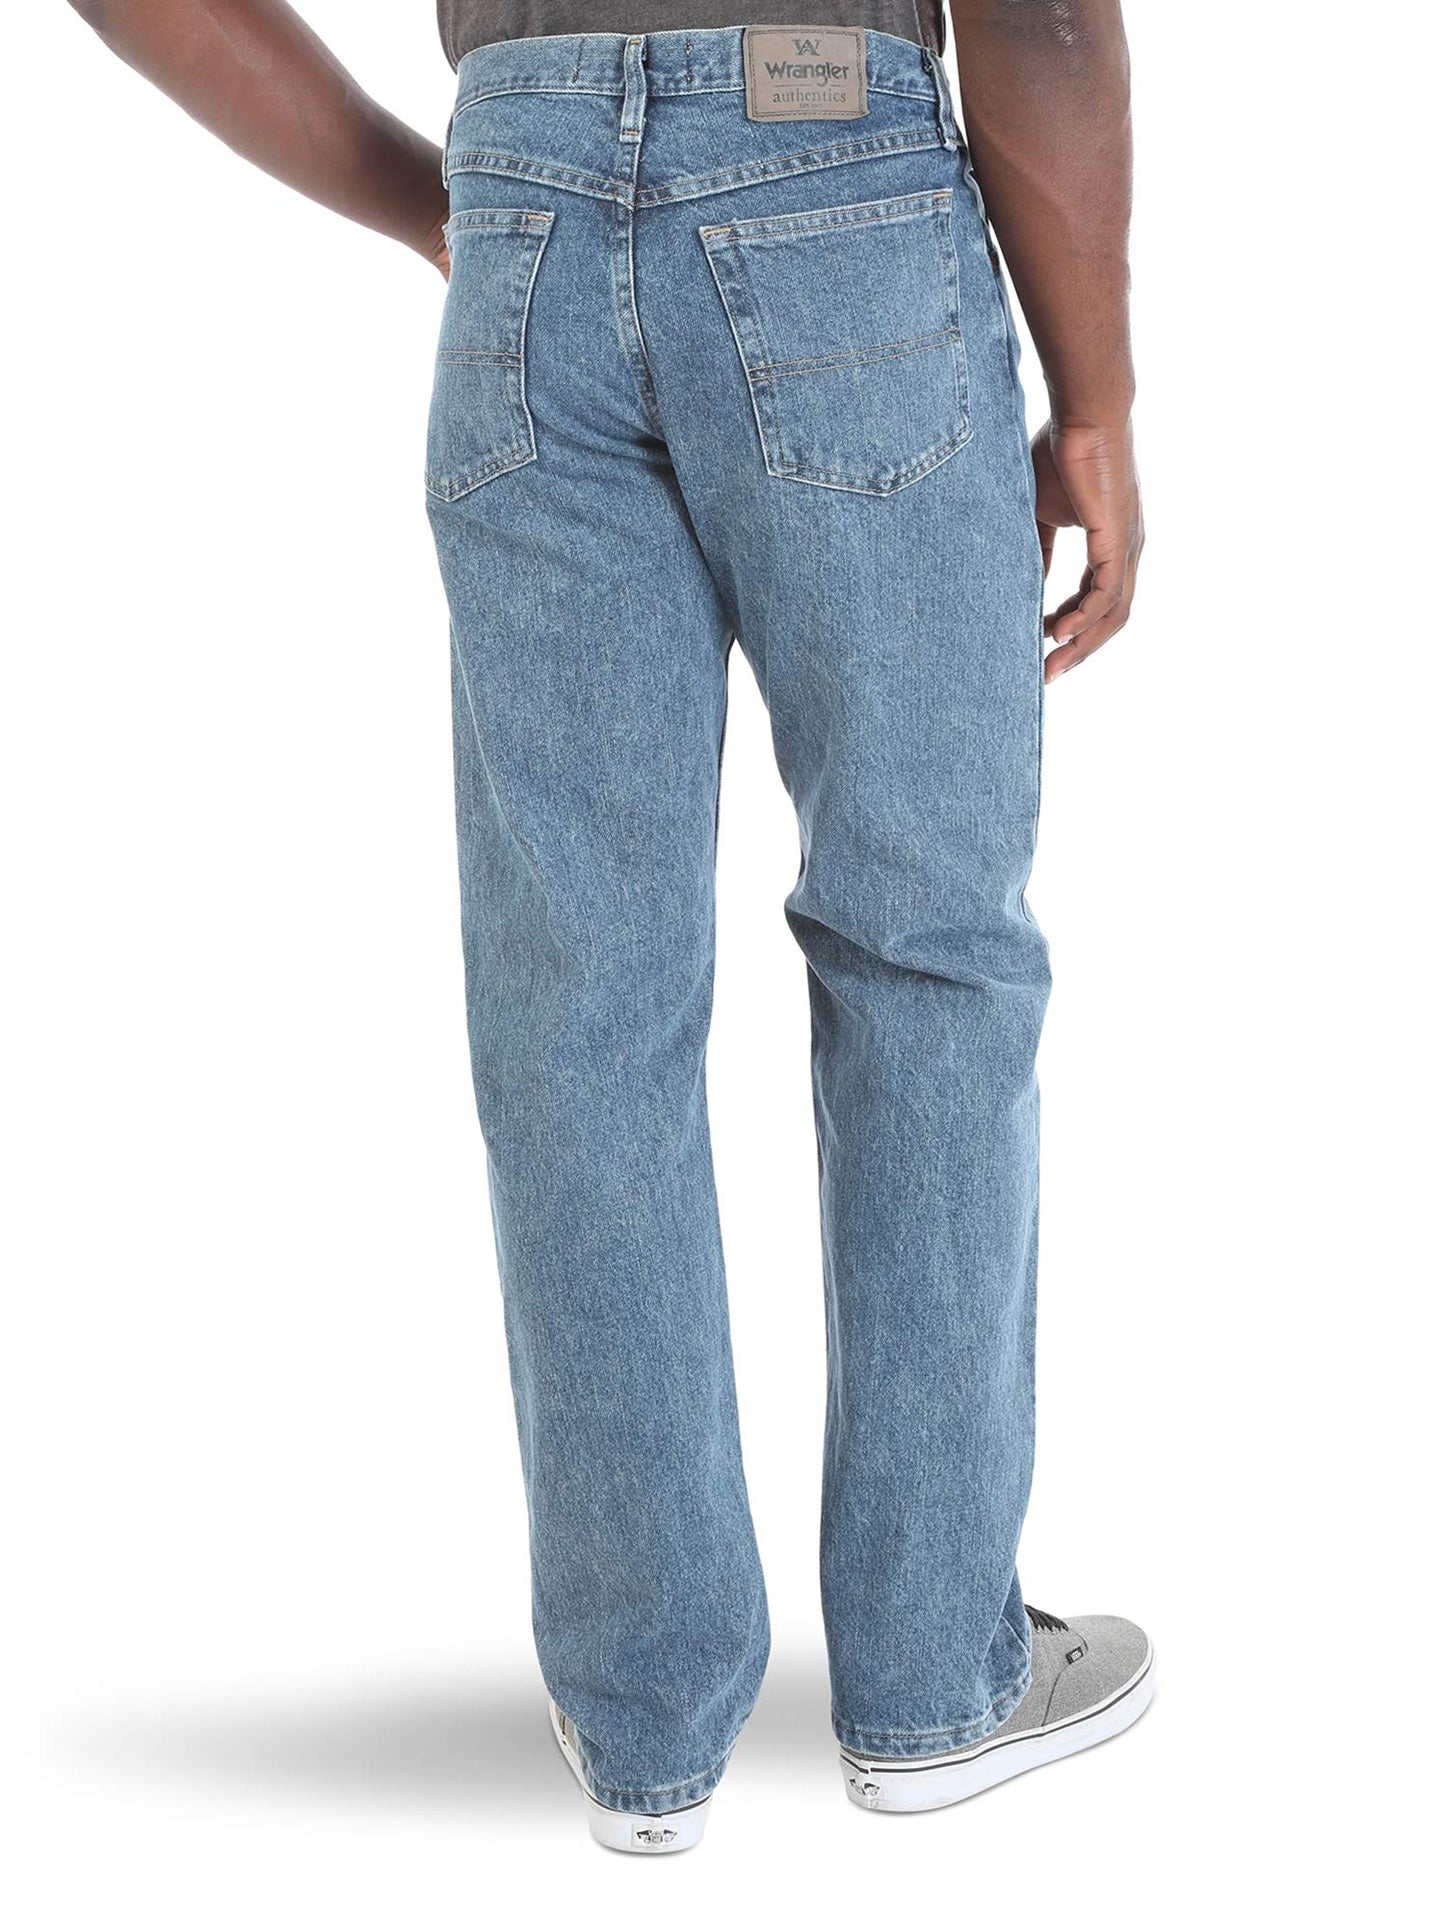 Wrangler Authentics Men's Classic 5-Pocket Relaxed Fit Cotton Jean, Vintage Stonewash, 38W x 30L